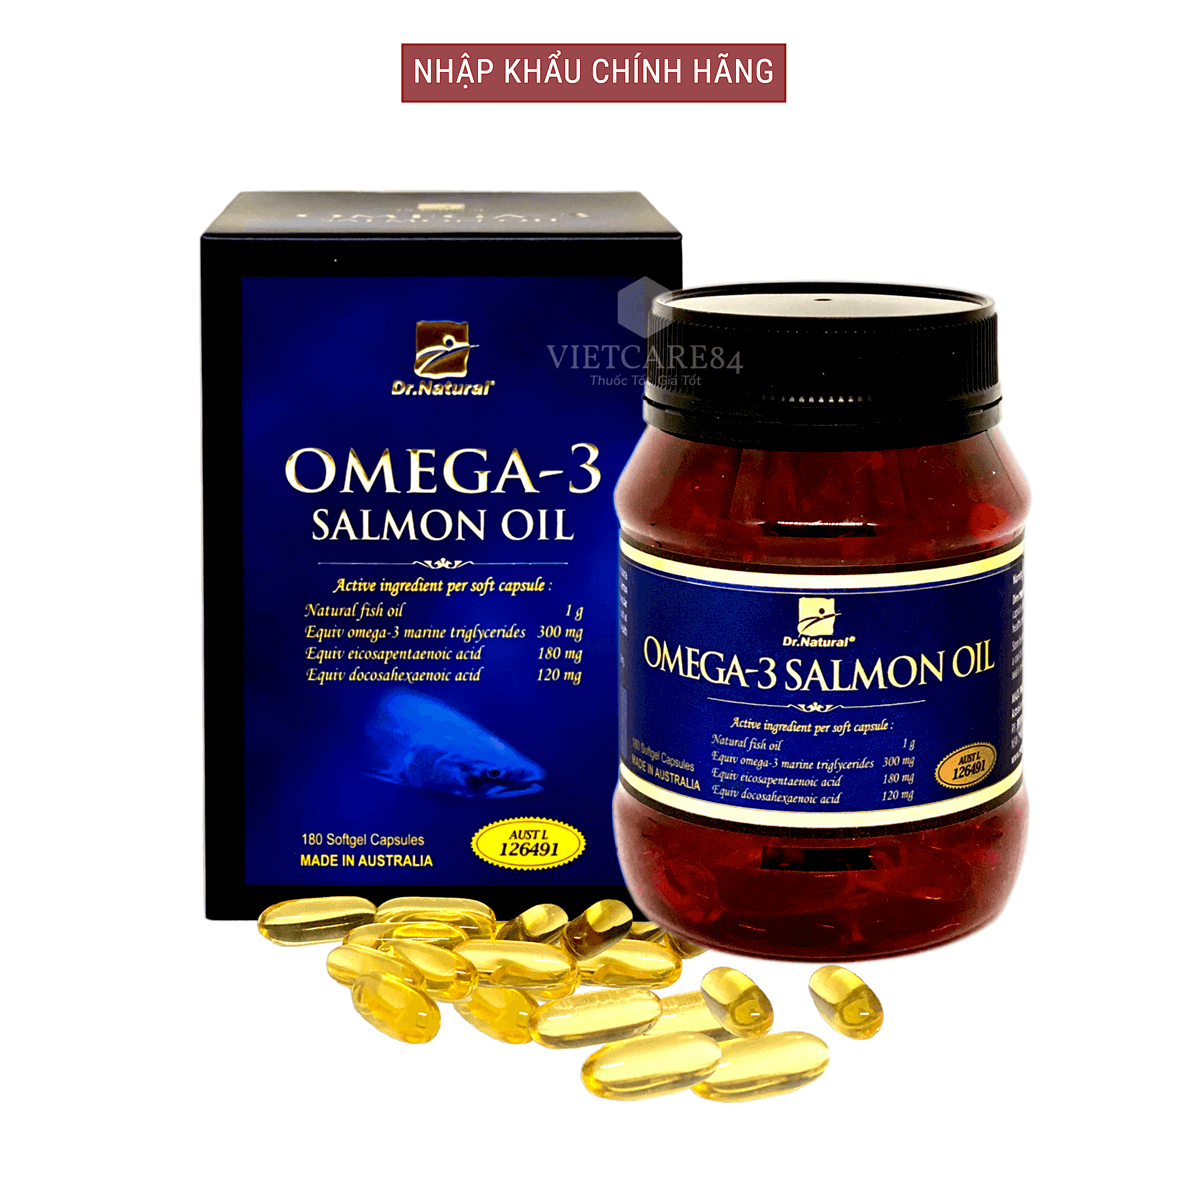 Bộ sản phẩm 2 hộp viên dầu cá hồi nhập khẩu chính hãng OMEGA 3 SALMON OIL (180 viên) giúp bổ sung DHA và EPA hỗ trợ giảm mỡ máu, giảm nguy cơ xơ vữa động mạch, cung cấp các chất dinh dưỡng cần thiết cho não bộ, tốt cho mắt